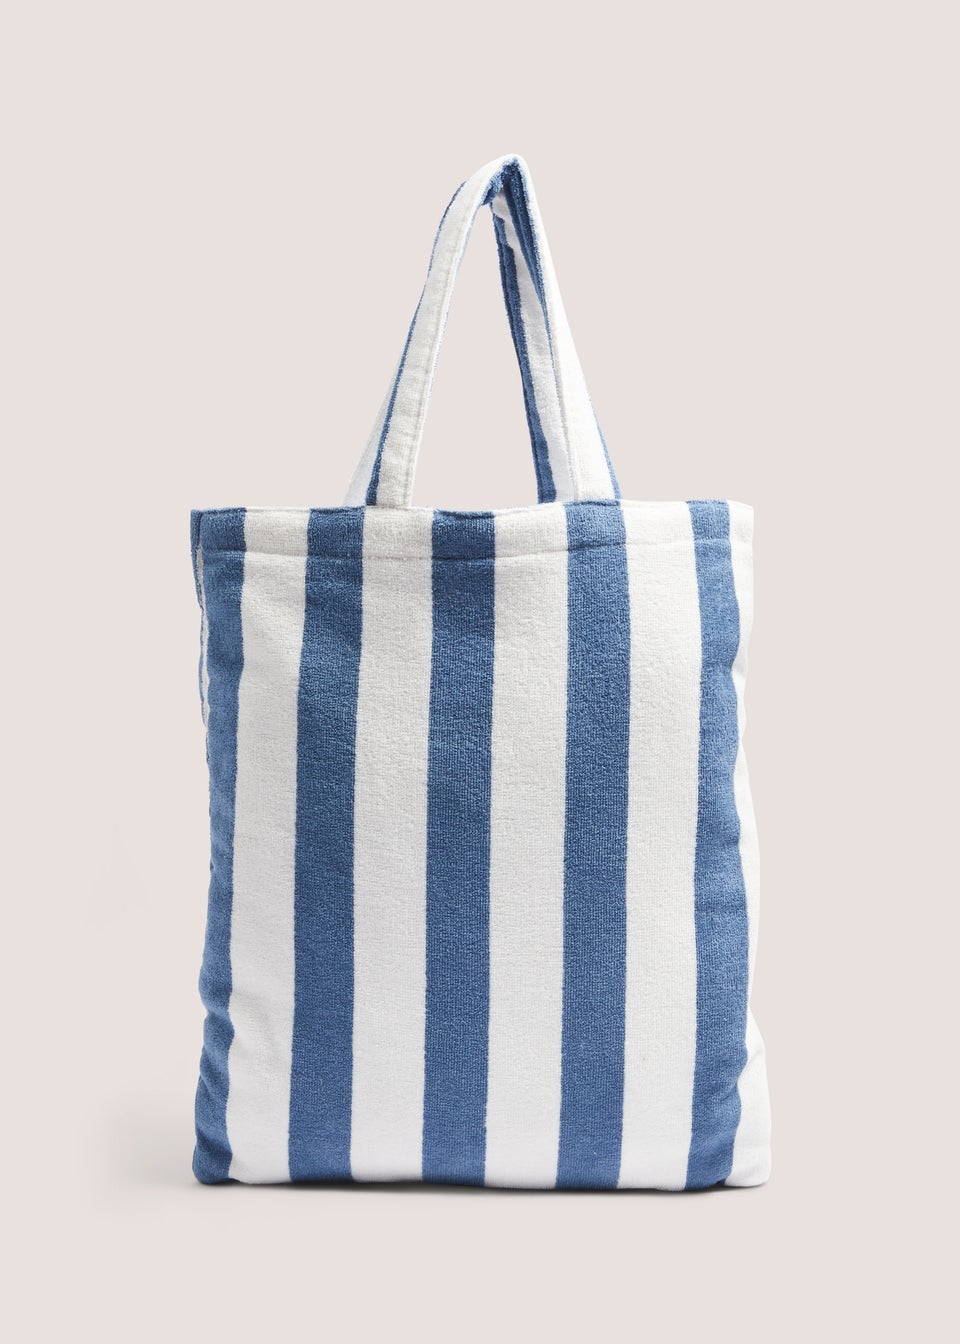 Indigo Beach Bag  (35cm x 30cm)